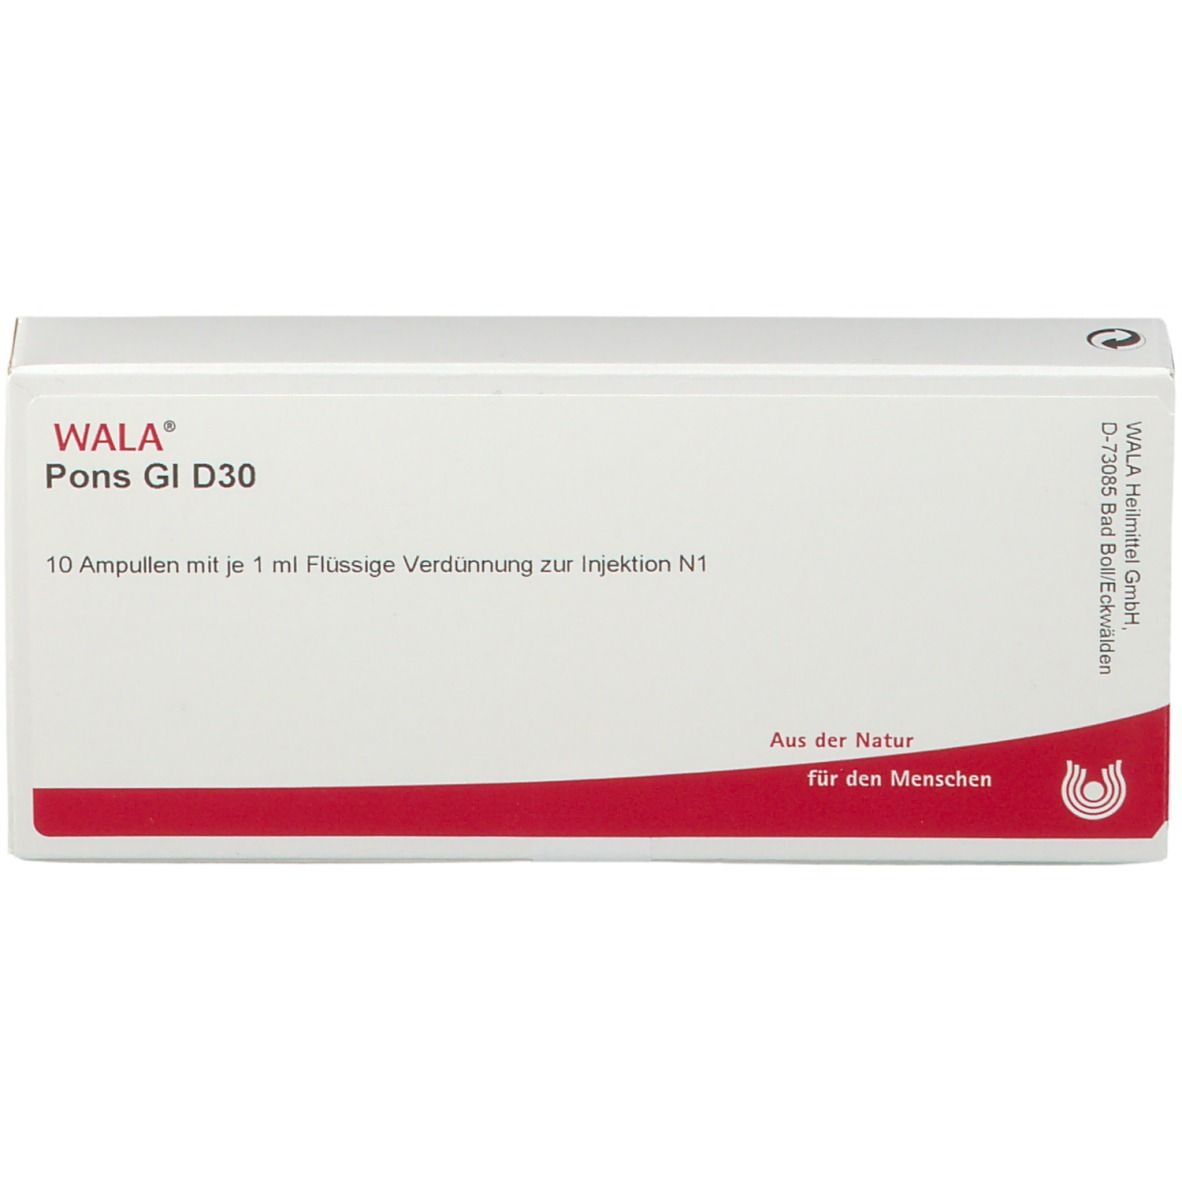 WALA® Pons Gl D 30